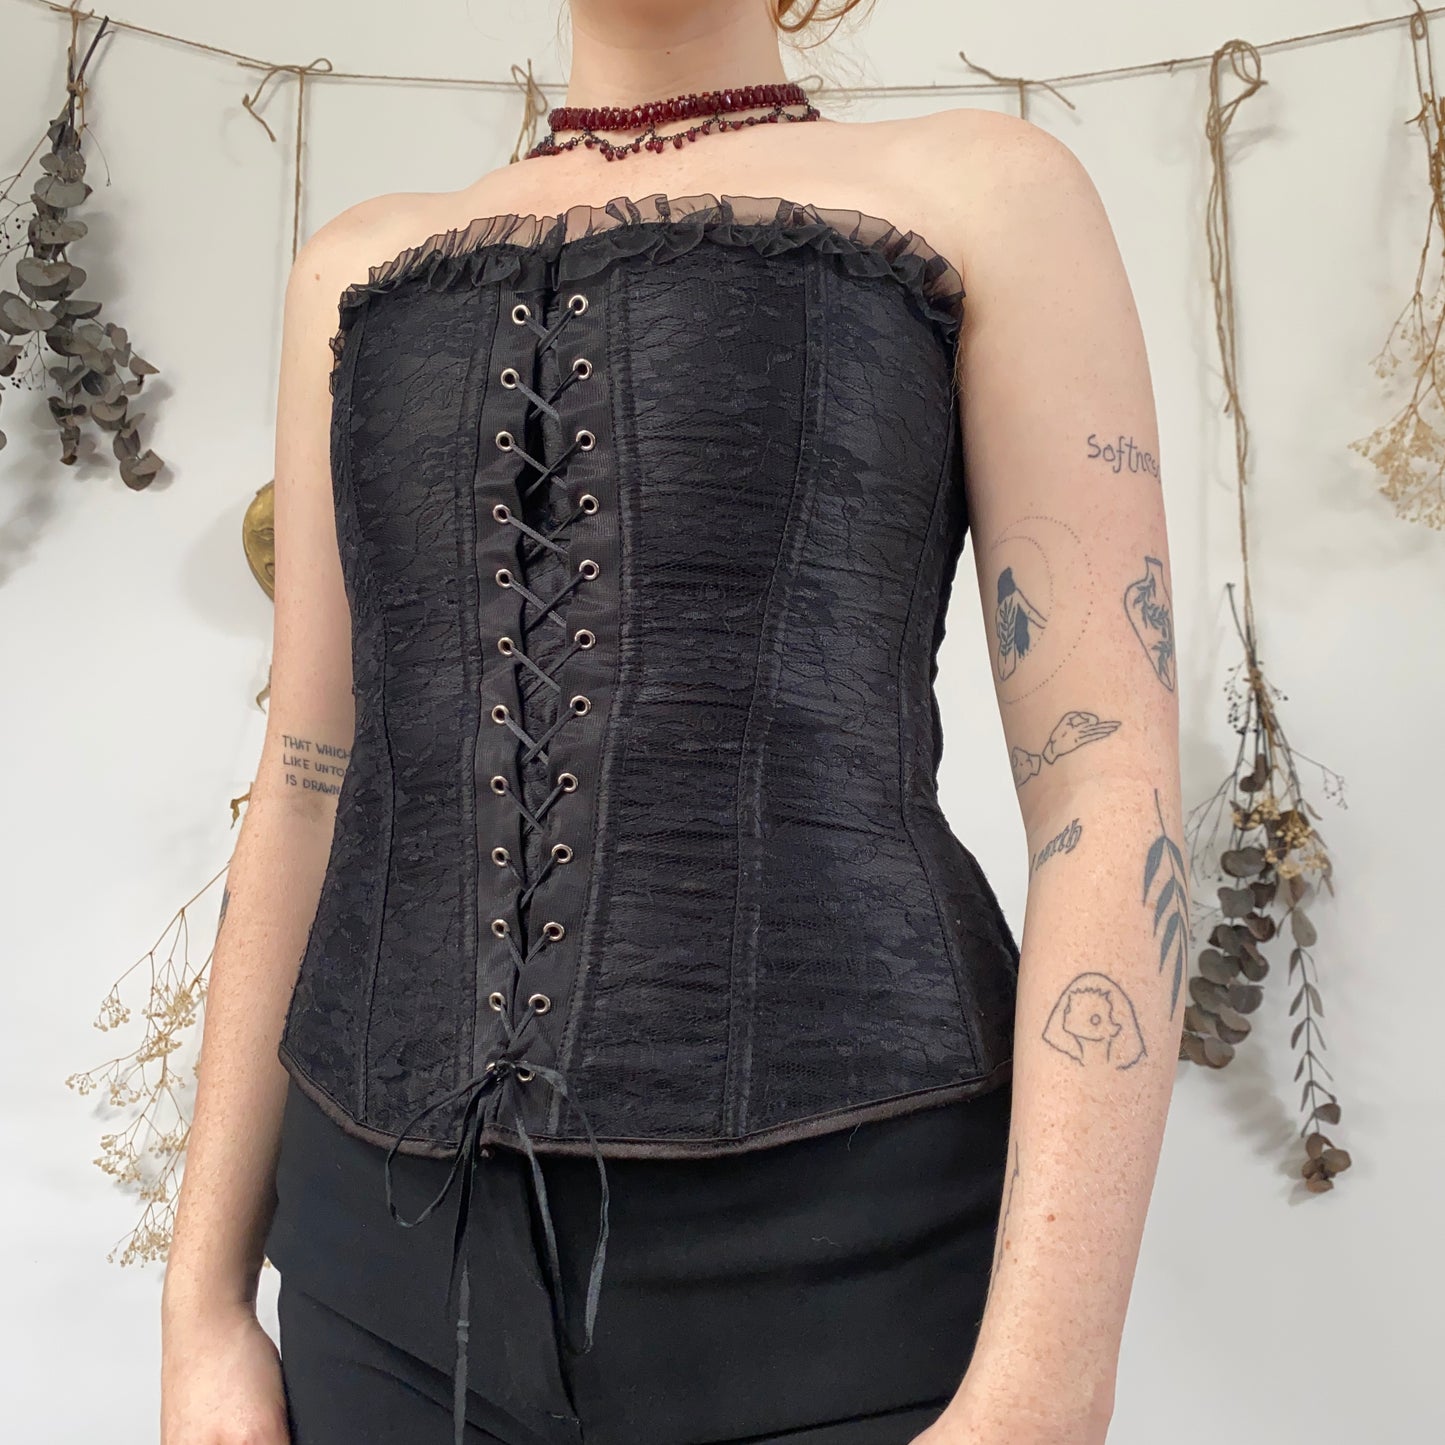 Black lace corset - size M